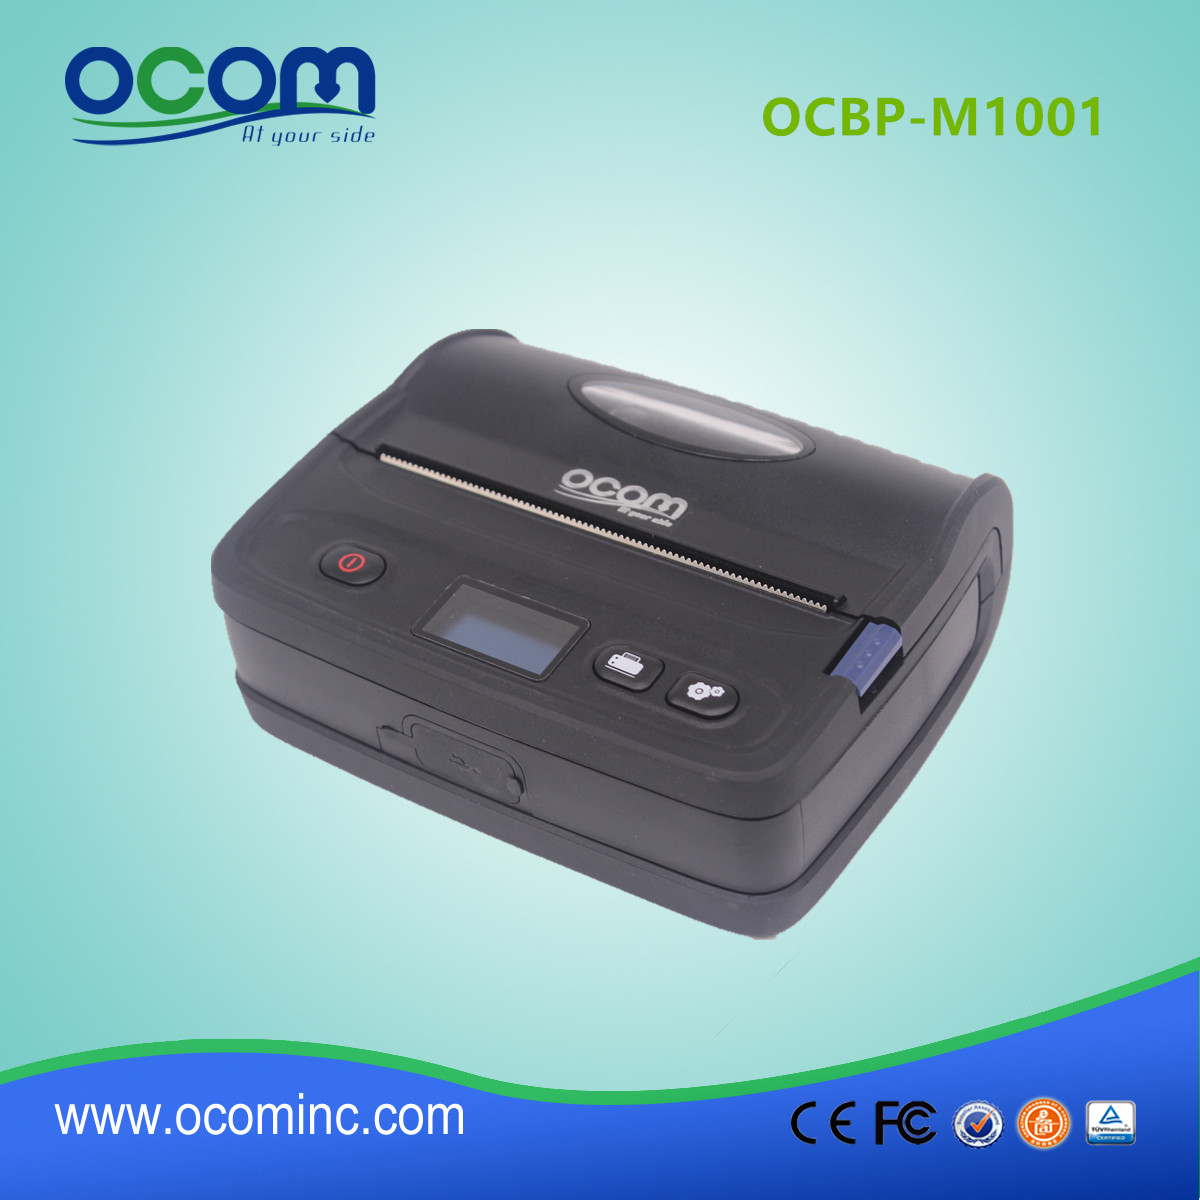 OCBP-M1001 hochwertige kompakte Bluetooth-Thermo-Empfang und Etiketten-Drucker